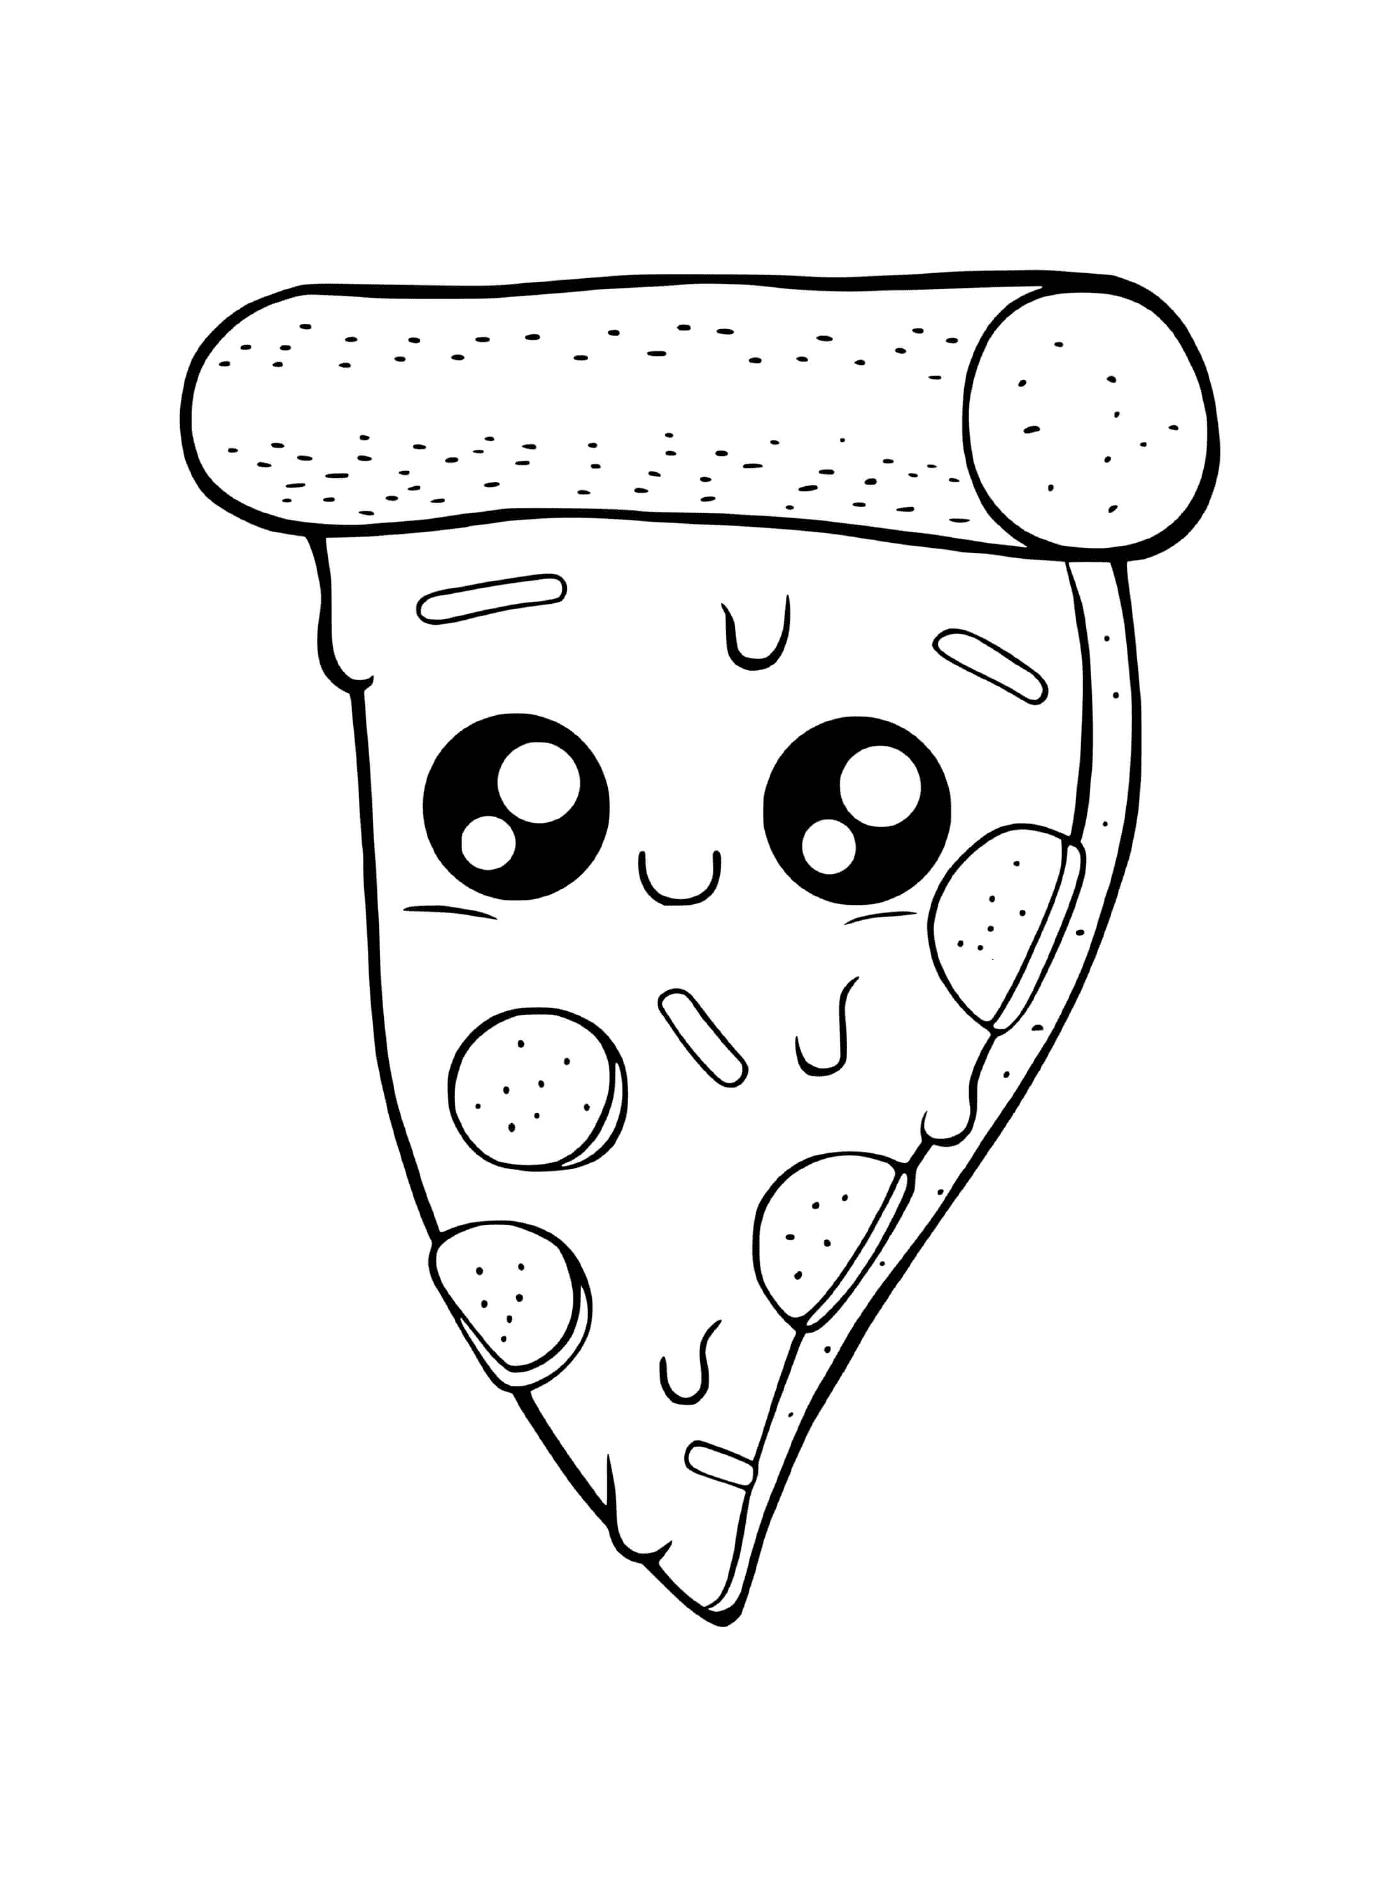   Une pizza au fromage fondant 